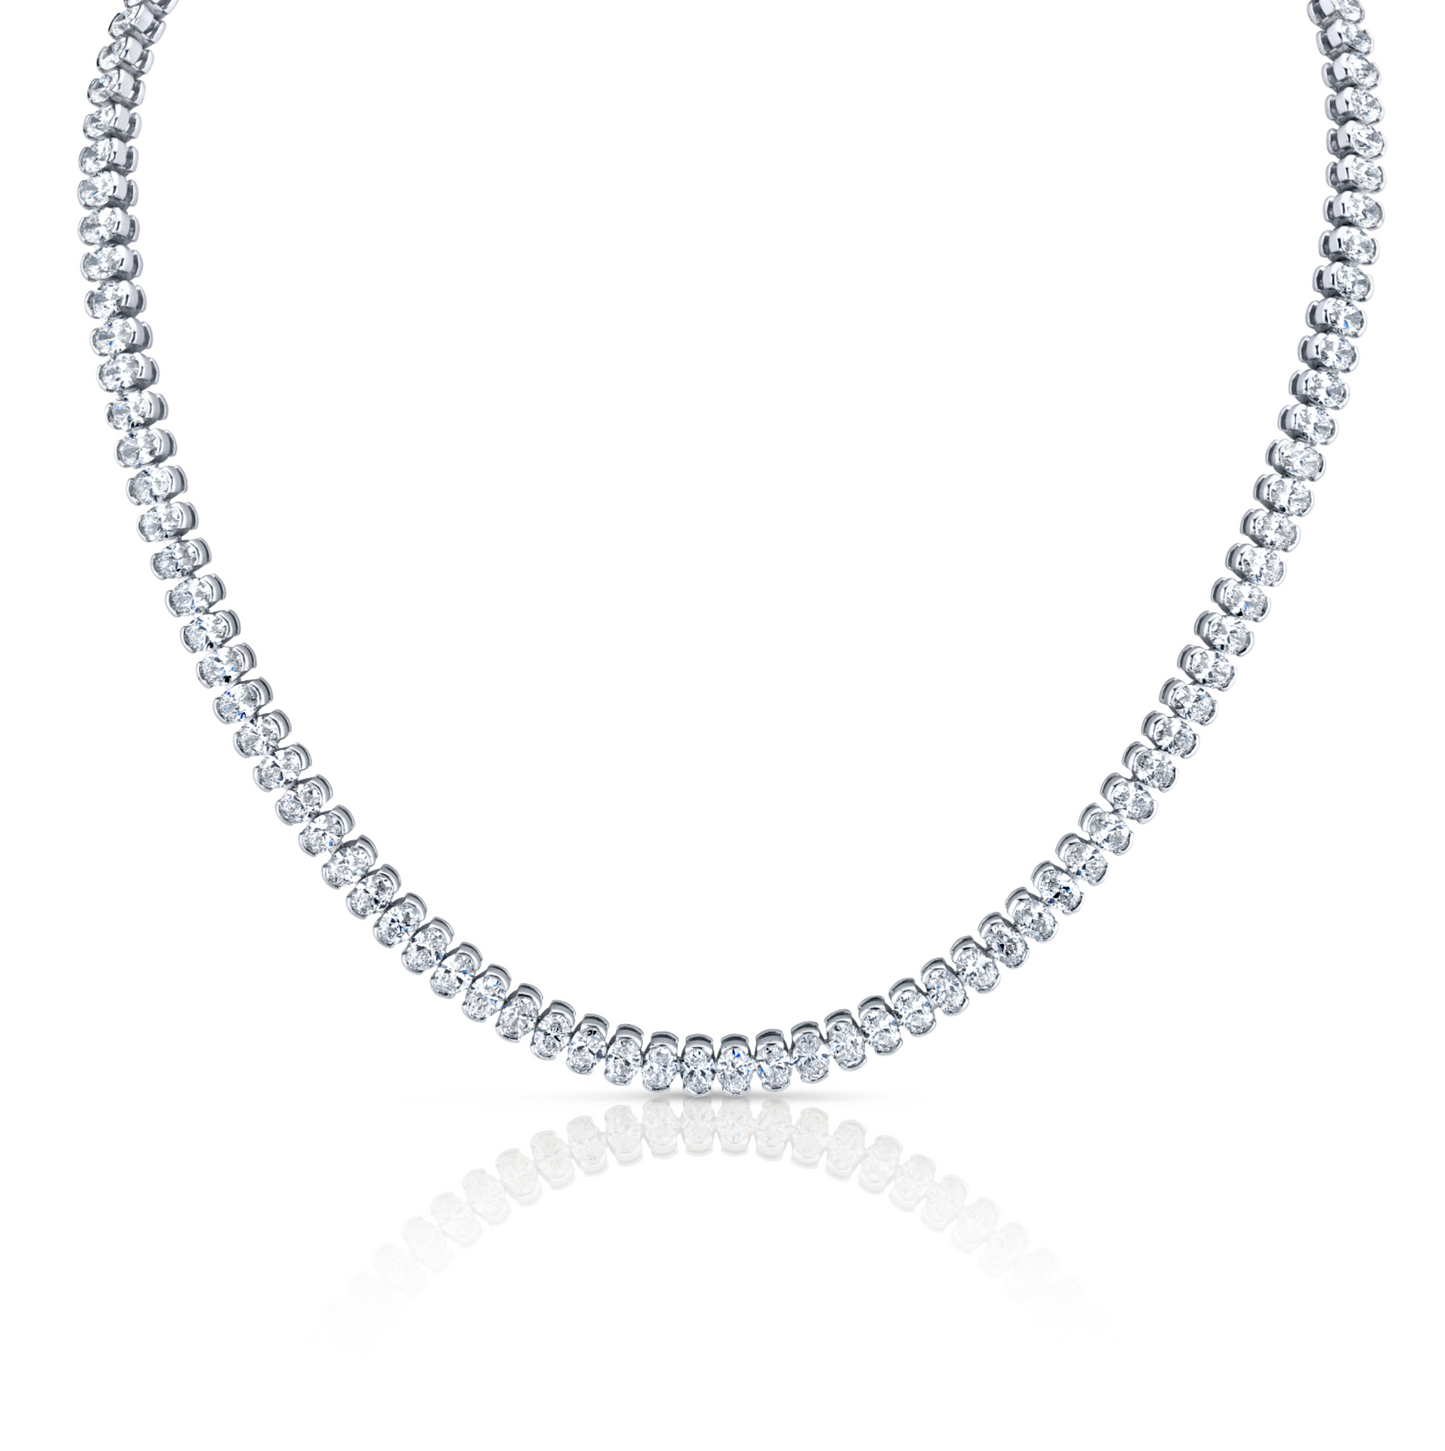 22.46 Carat Oval Cut Diamond Necklace